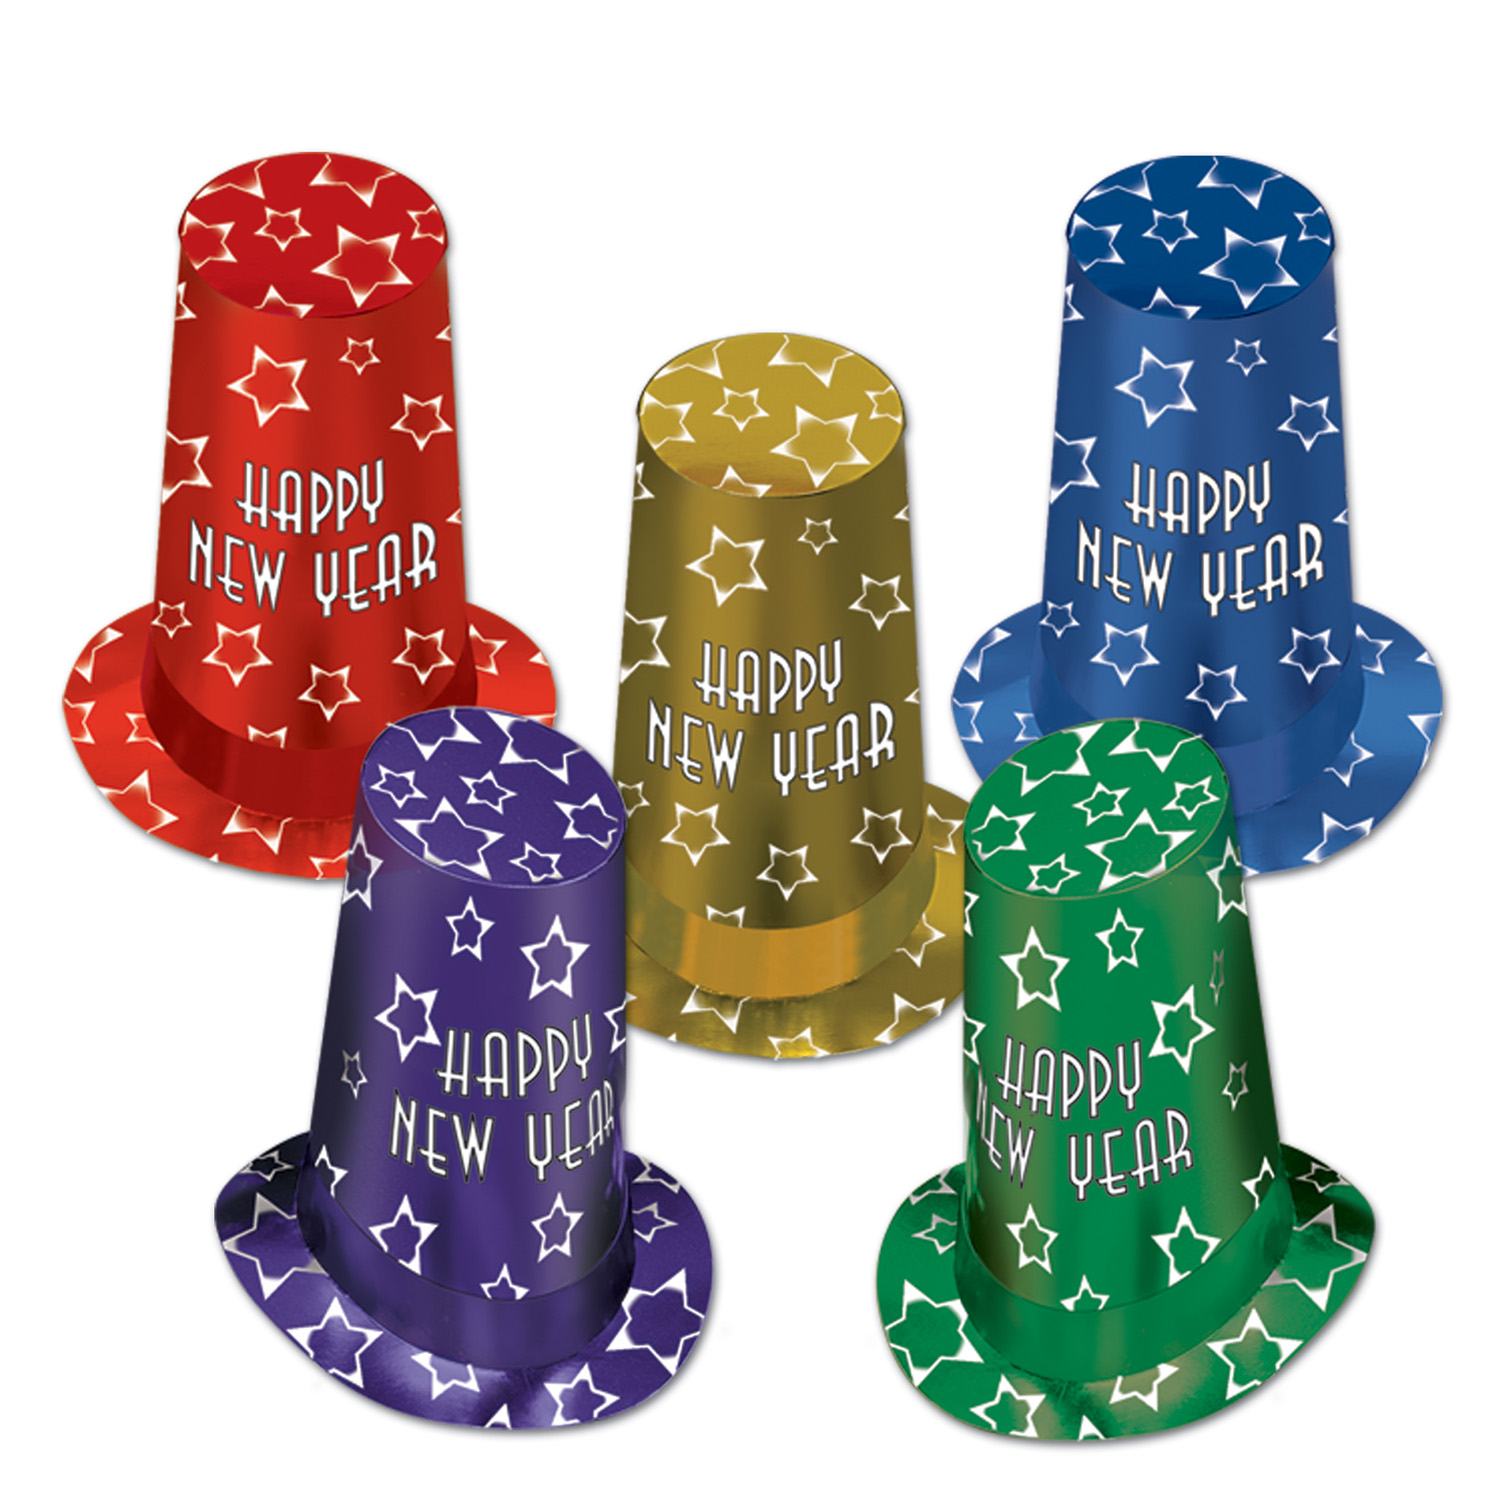 10 Pieces of New Year Super Hi-Hats